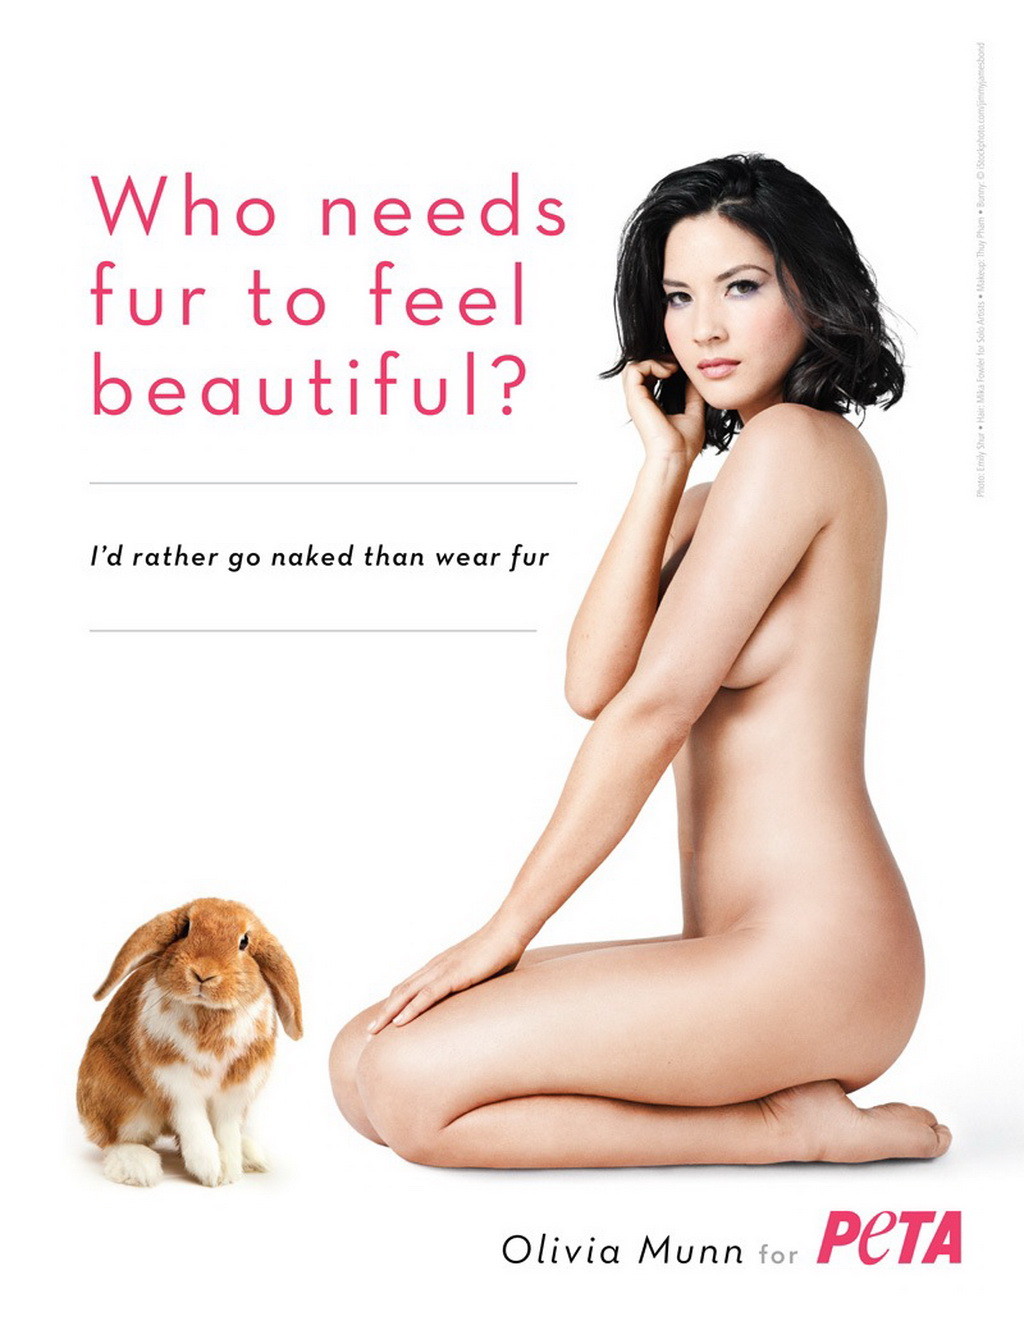 Olivia munn totalmente desnuda pero escondida para la nueva campaña publicitaria de peta
 #75276548